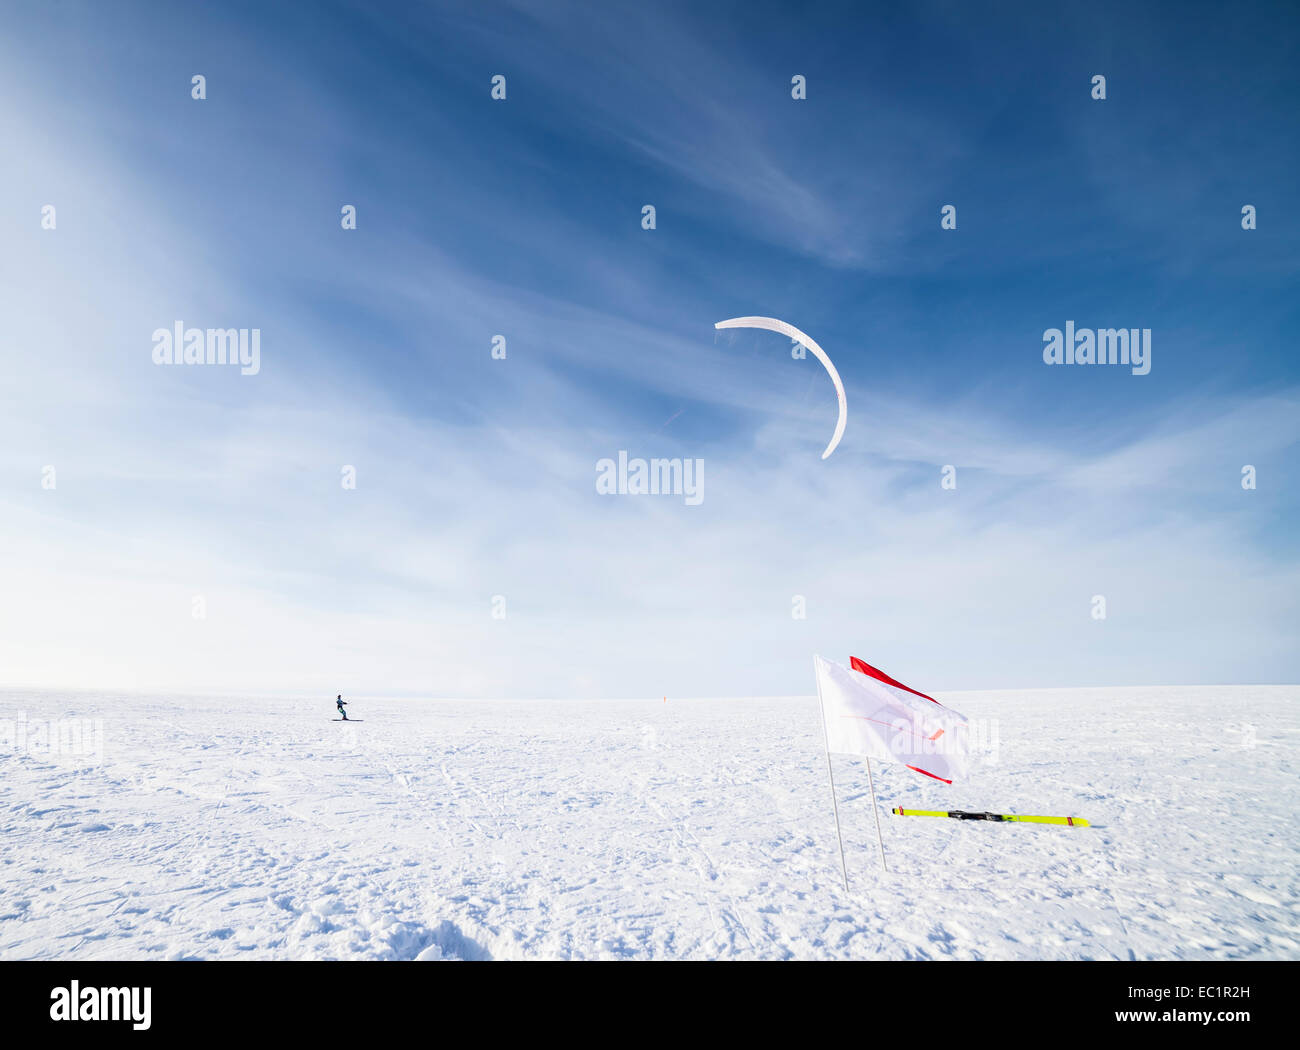 Kiteboarding on snow Stock Photo